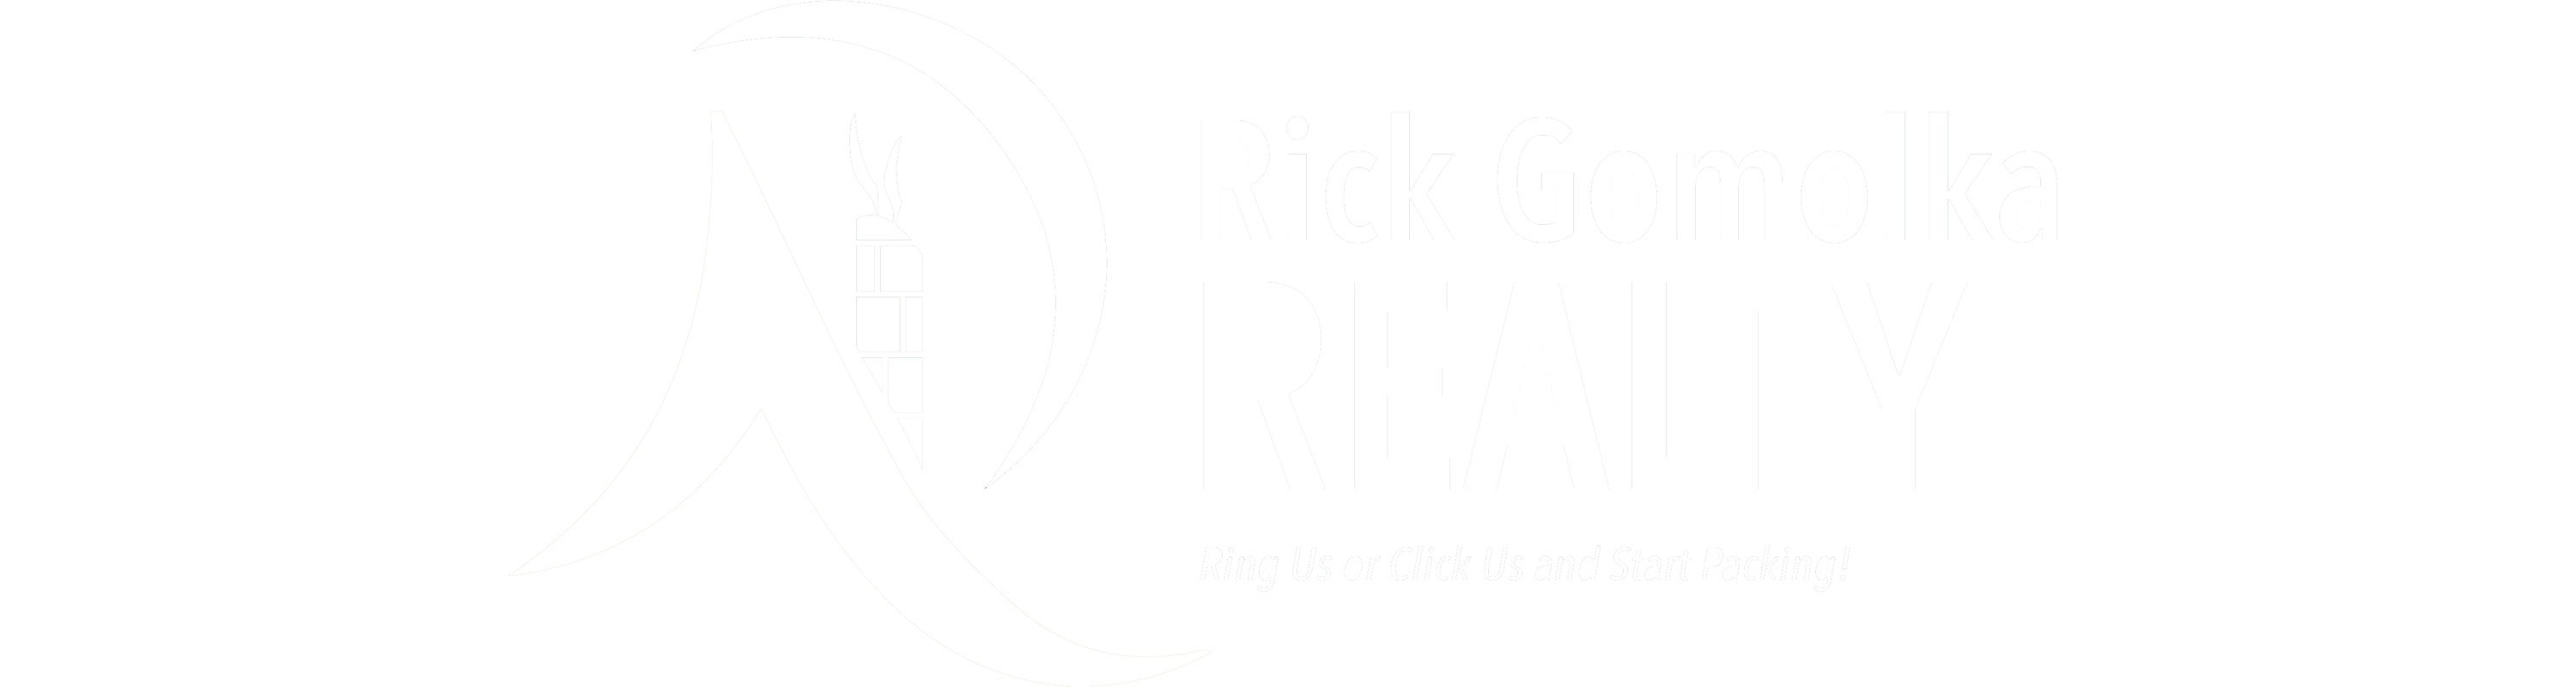 Rick Gomolka Realty